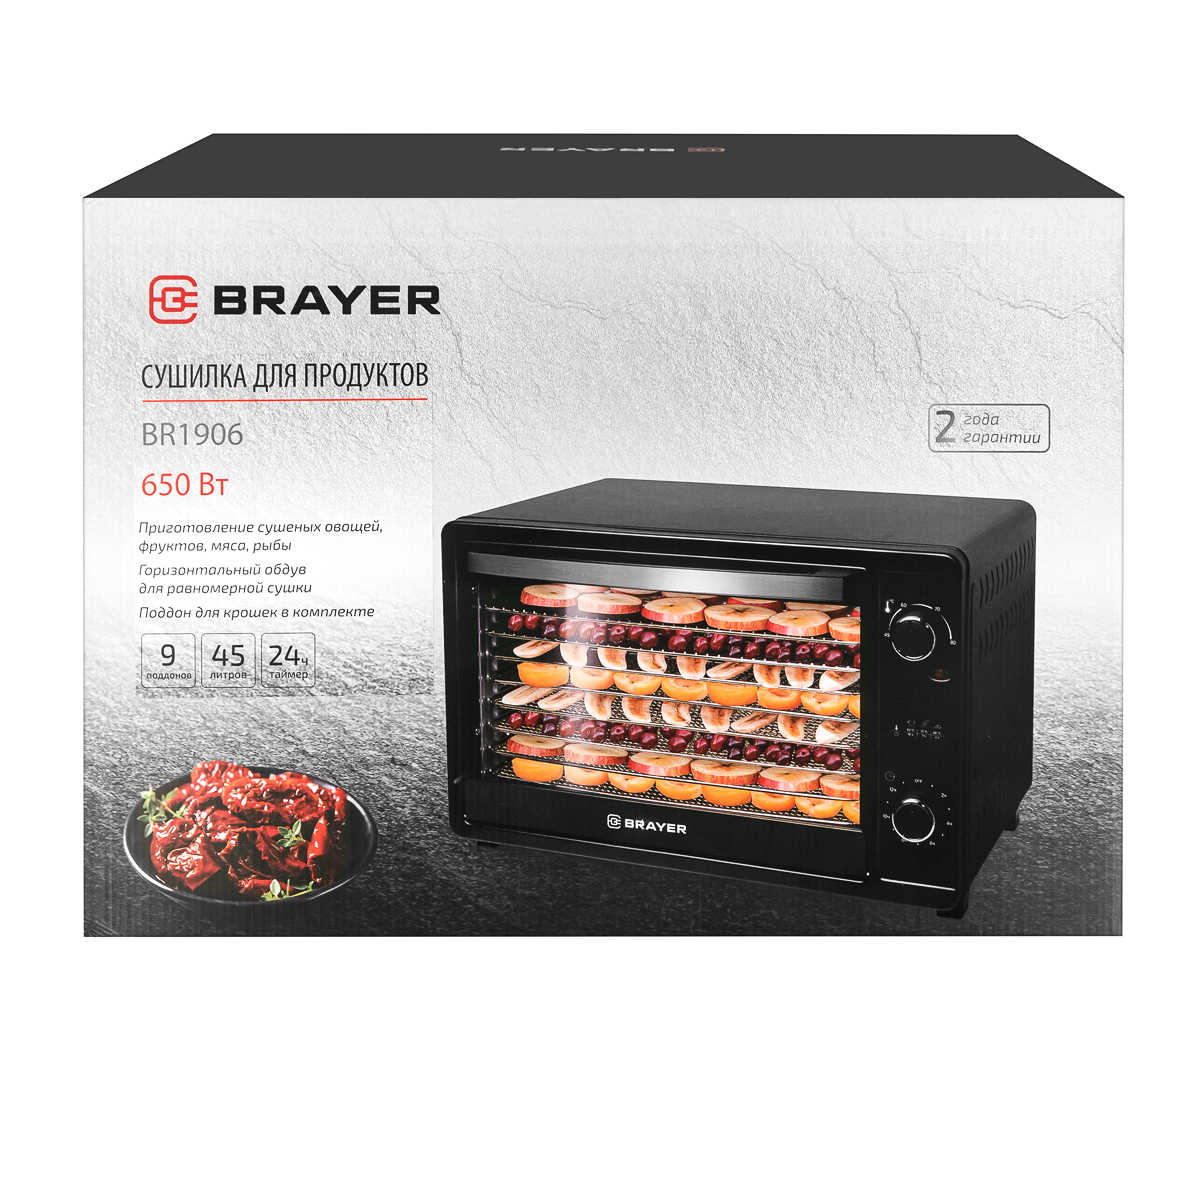 Сушилка для продуктов BRAYER BR1906